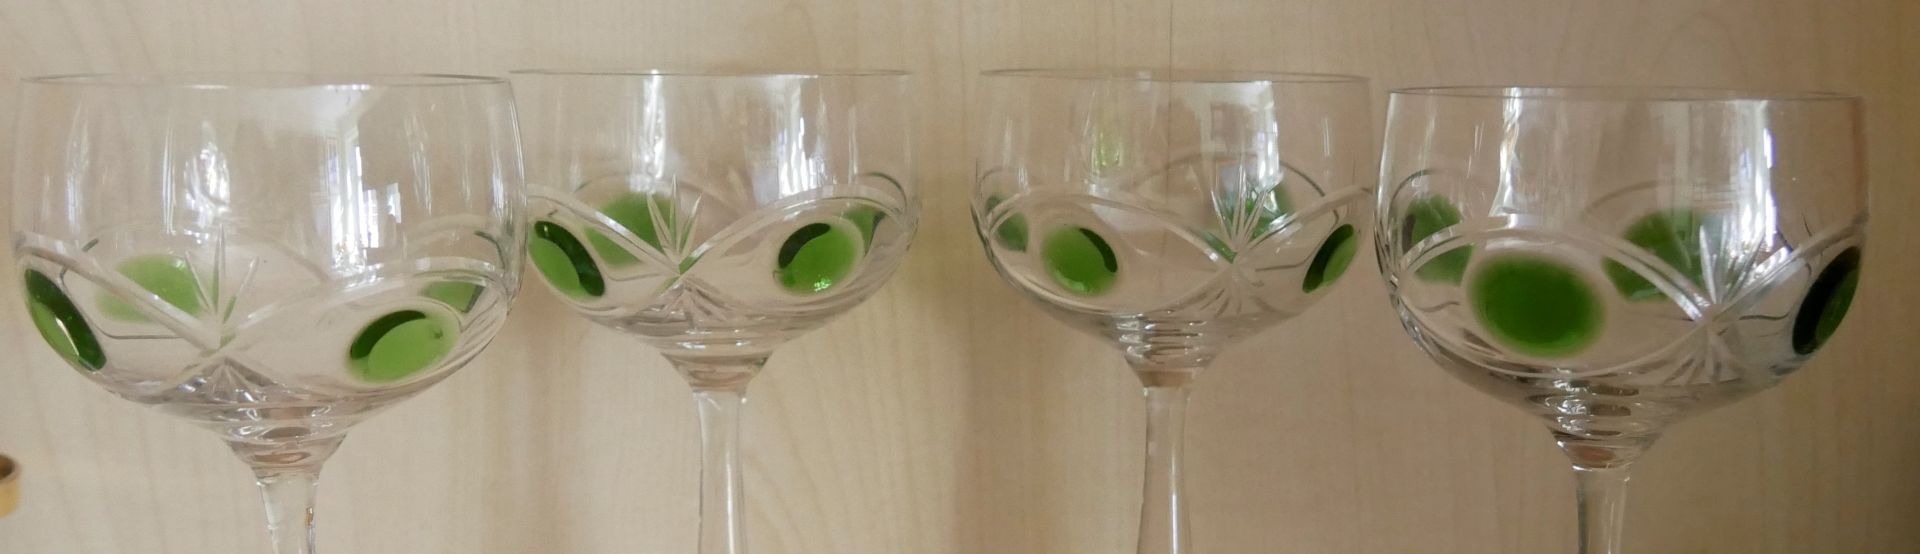 4 Weingläser, Klarglas geschliffen mit grünen Punkten. Höhe ca. 21 cm - Bild 2 aus 2